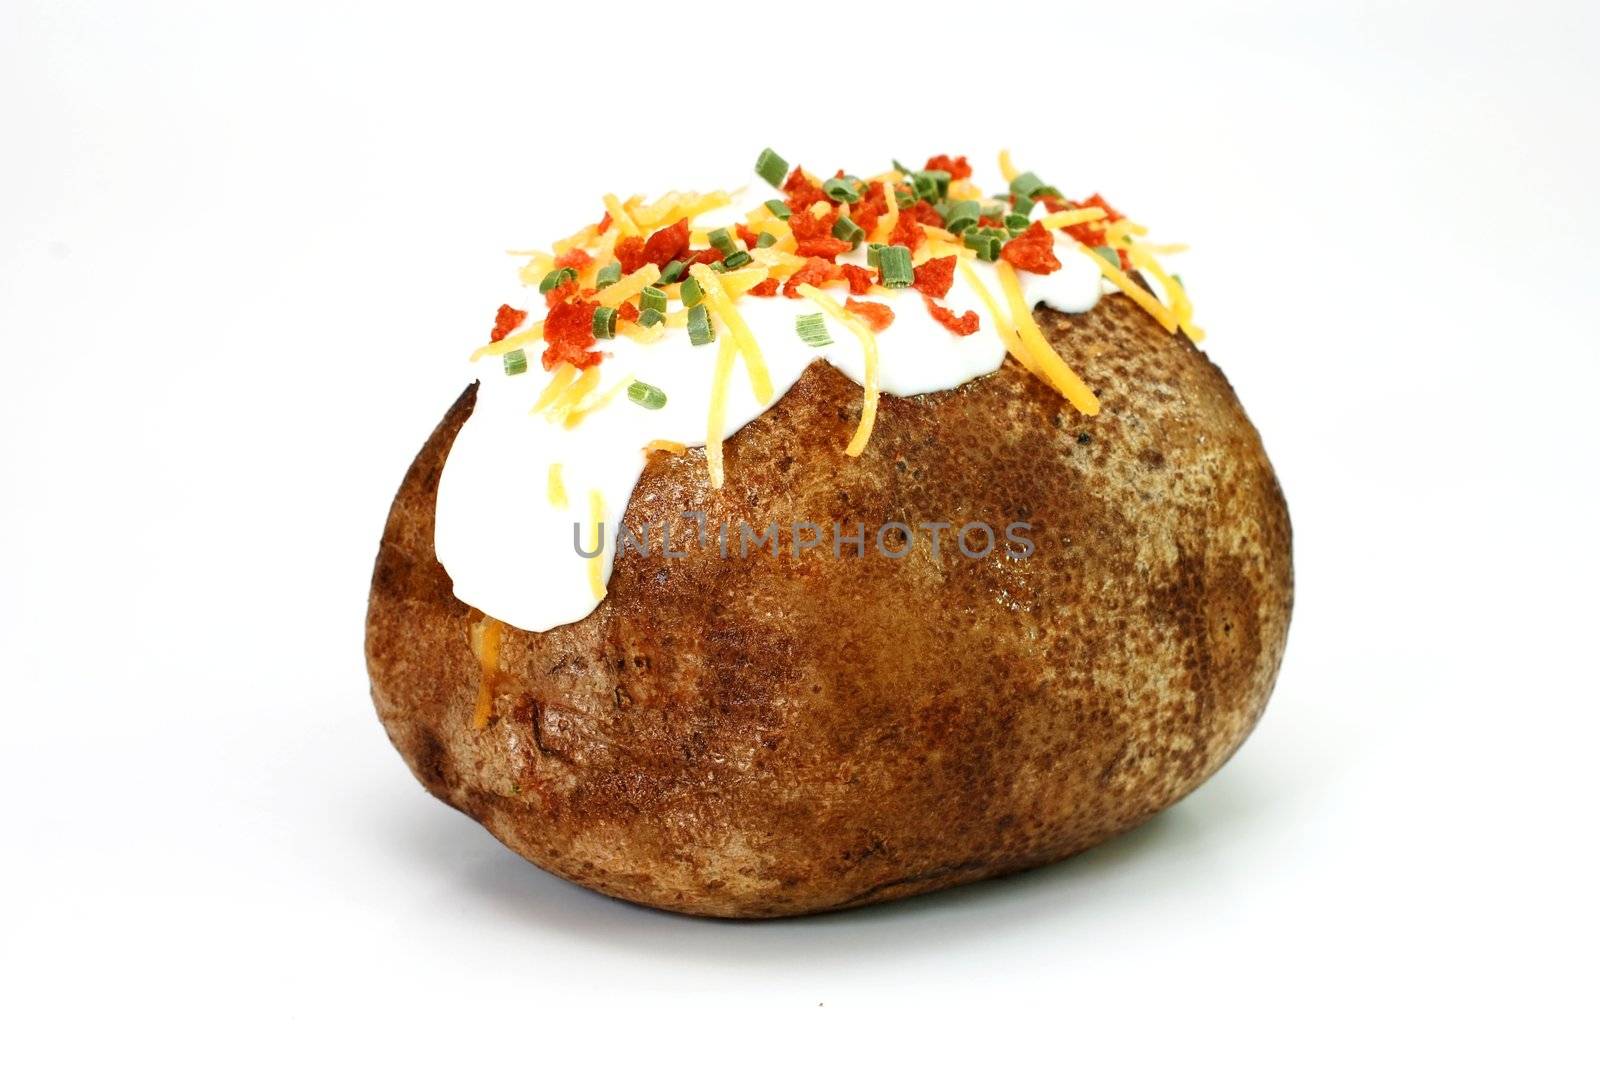 Loaded Baked Potato by dehooks